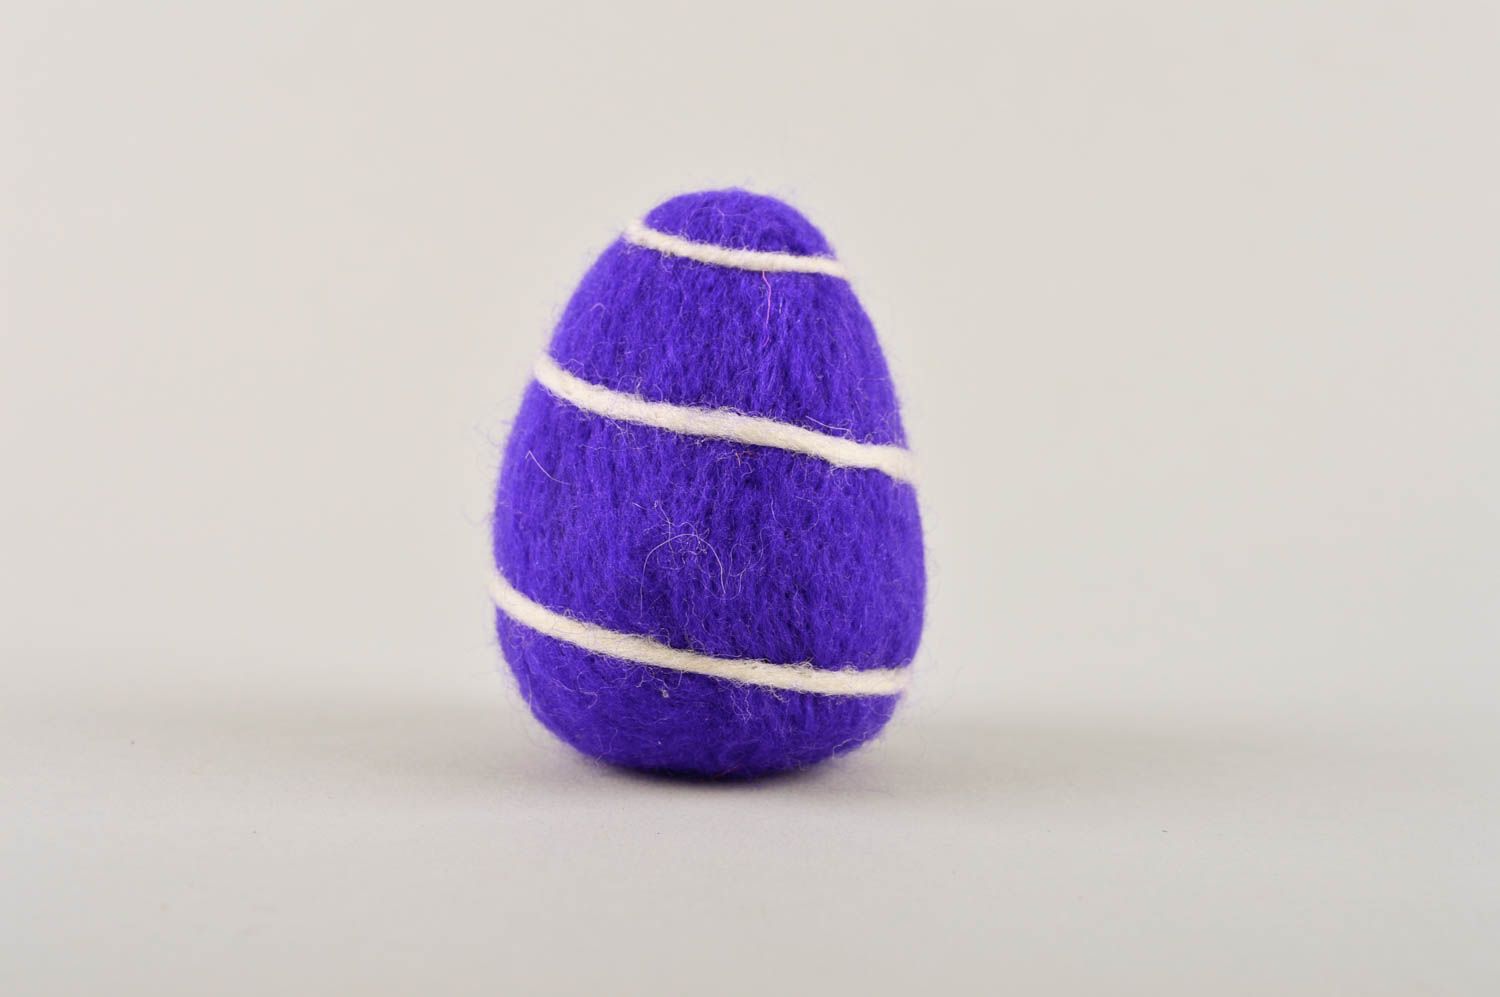 Декоративное яйцо ручной работы игрунка из шерсти валяная игрушка филлетовая фото 3